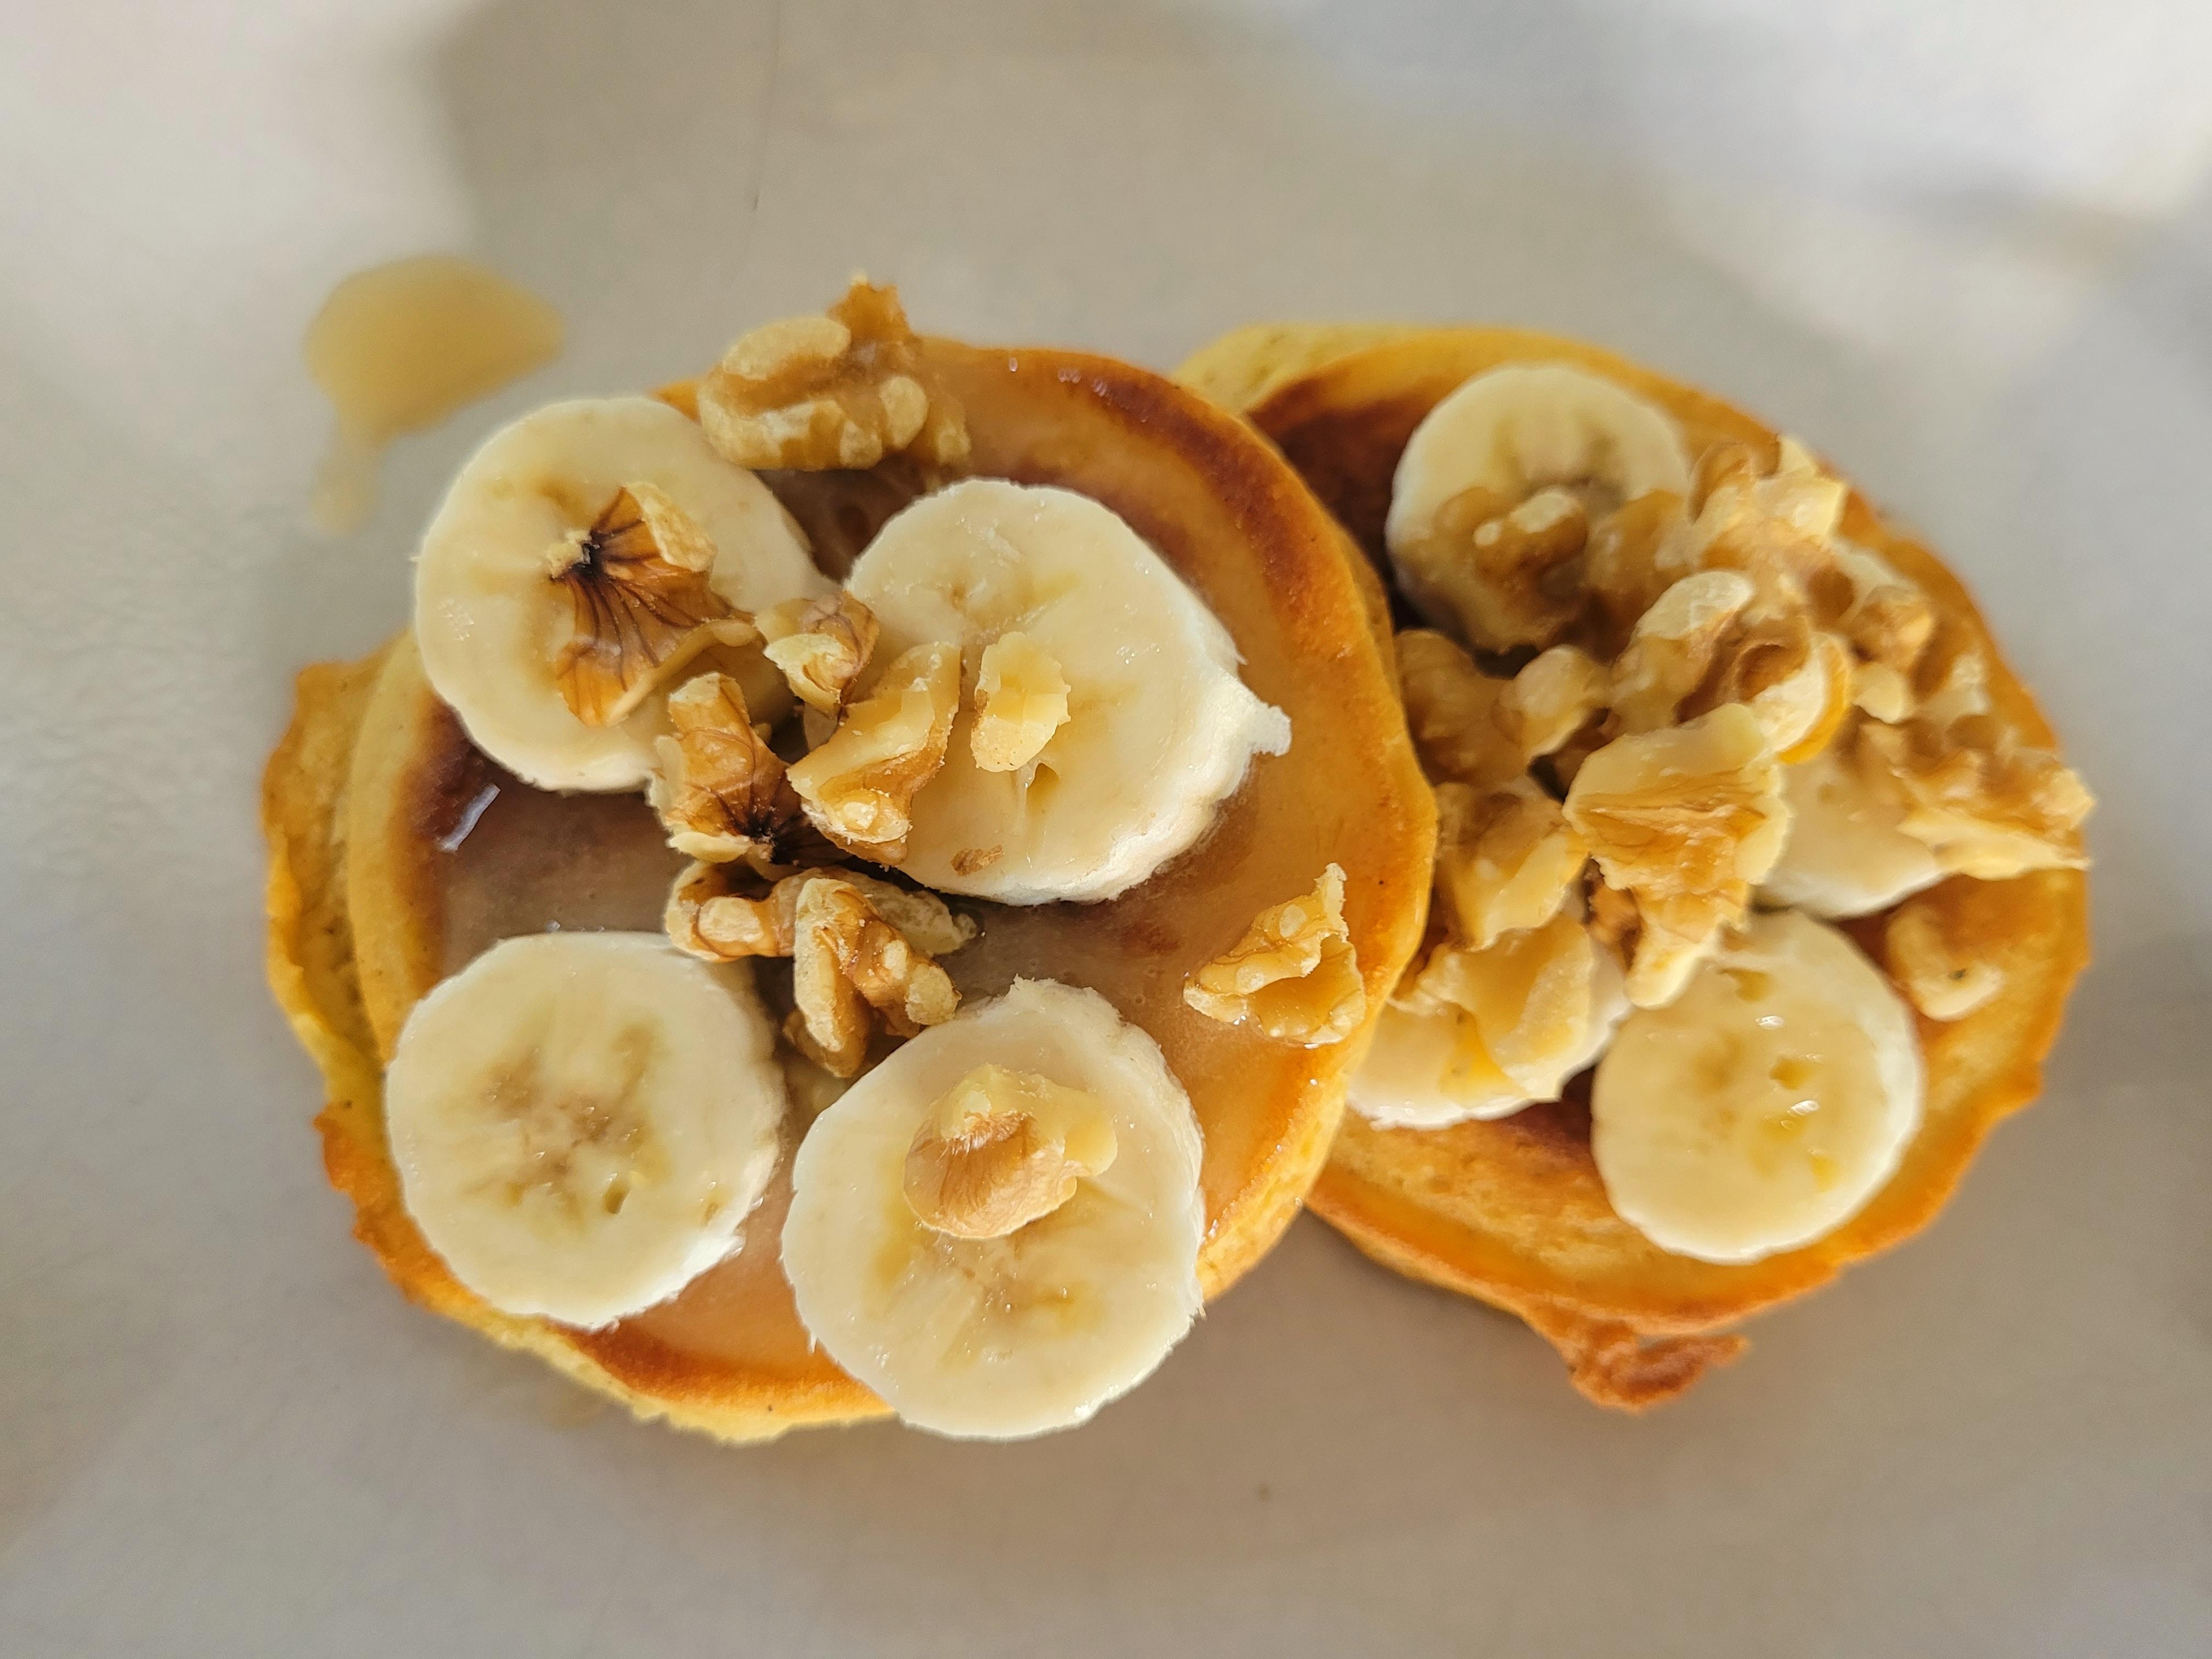 Heute Morgen spontan Hunger auf Pancakes gehabt! ❤️ 
#lecker #glutenfrei #backen